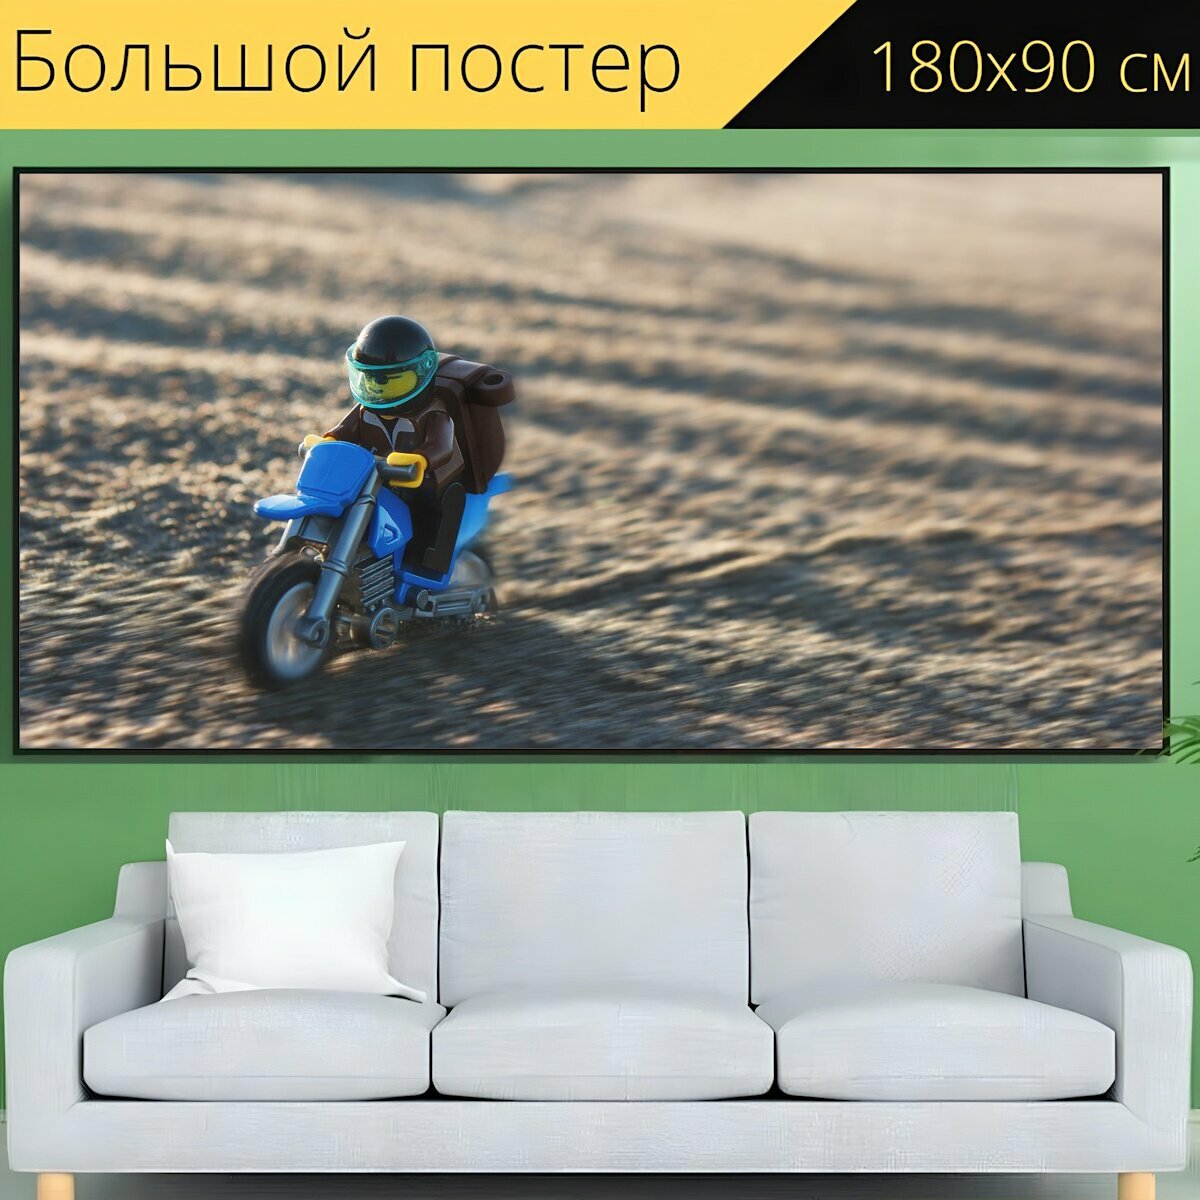 Большой постер "Мотоцикл, велосипед грязи, бездорожью" 180 x 90 см. для интерьера